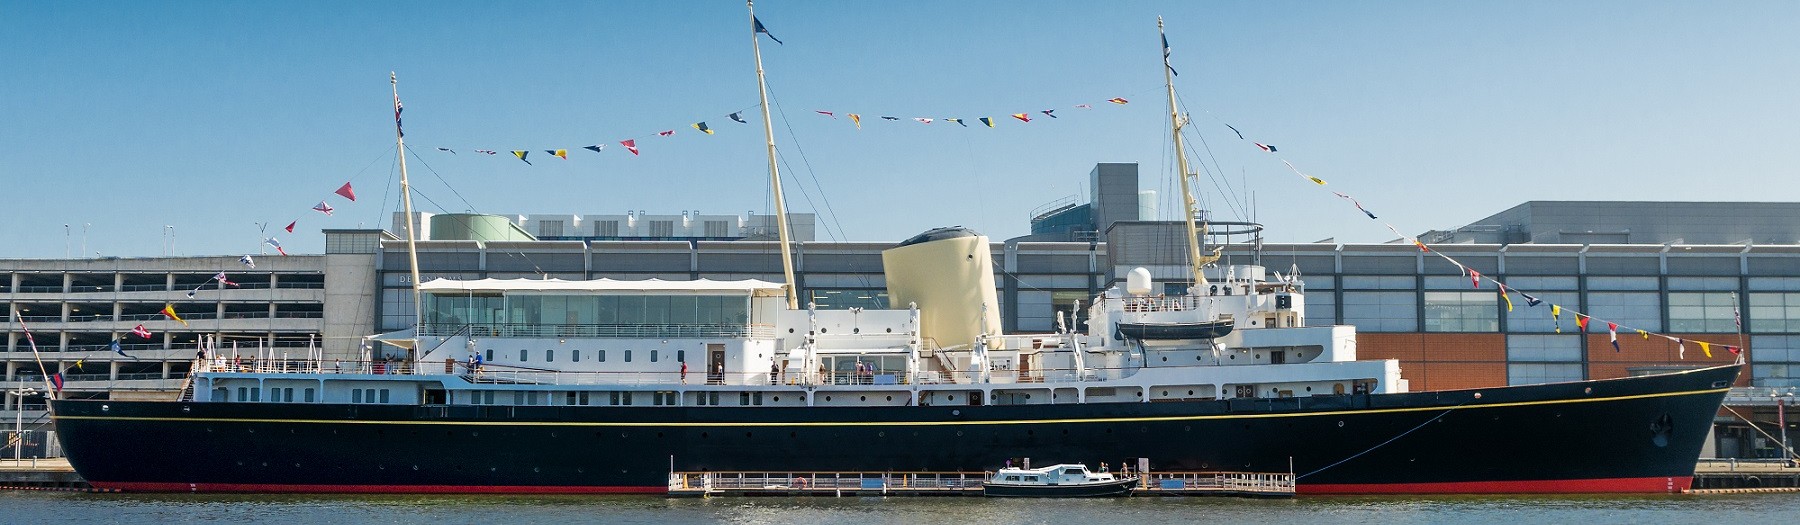 The Royal Yacht Britannia 